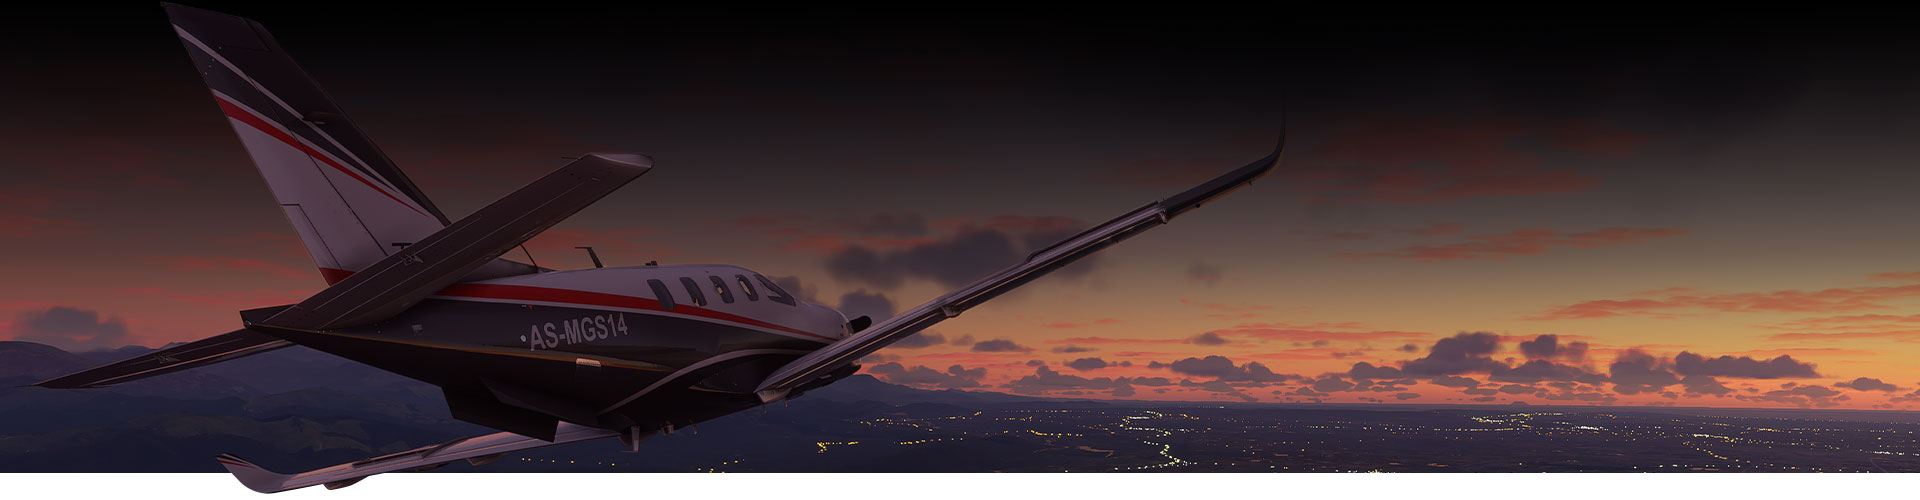 Αεροπλάνο από το Microsoft Flight Simulator που πετά πάνω από μια πόλη την ώρα του ηλιοβασιλέματος